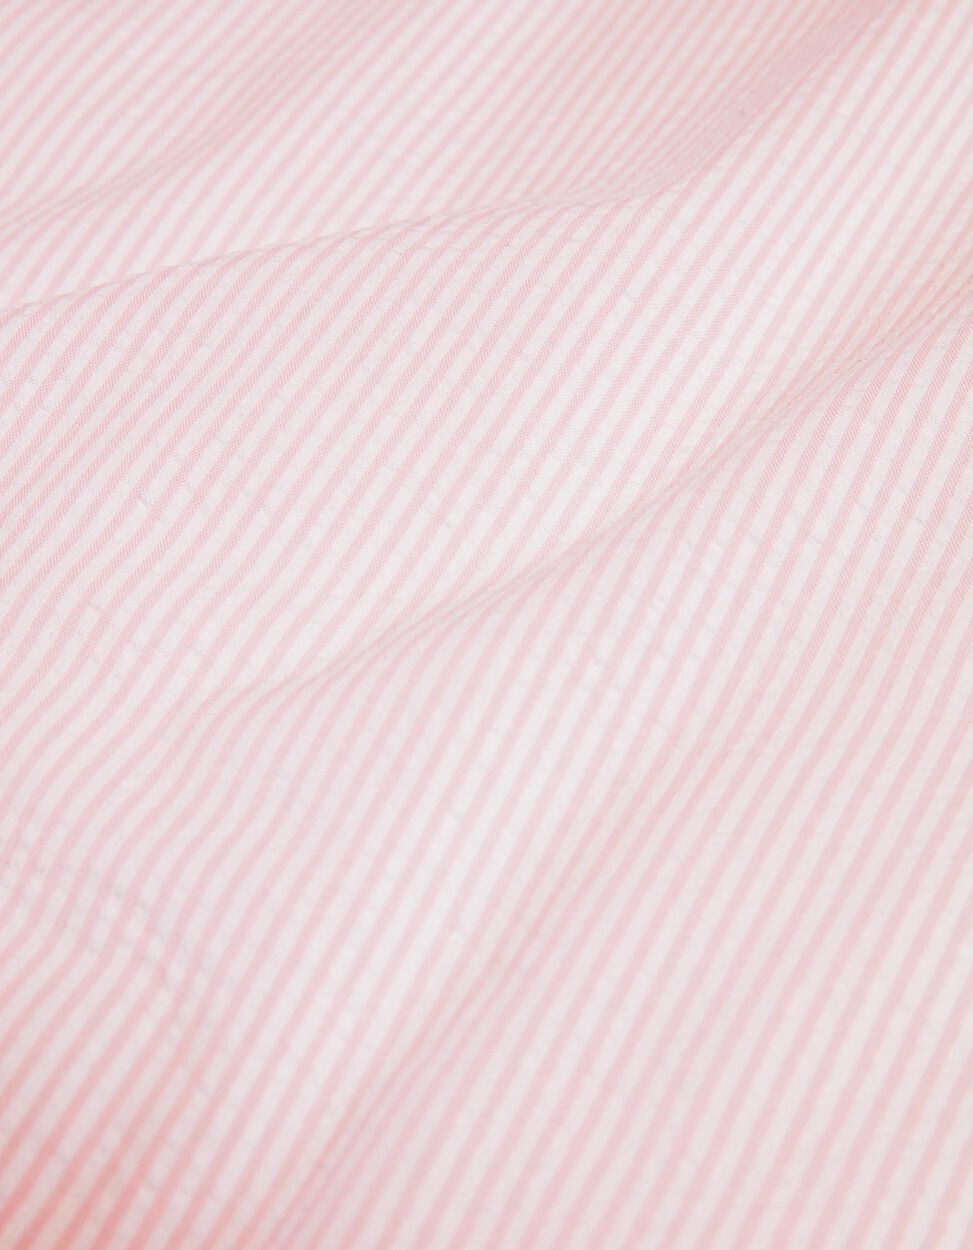 Nórdico de Cama 120 x 60 cm Essential Pink Zy Baby